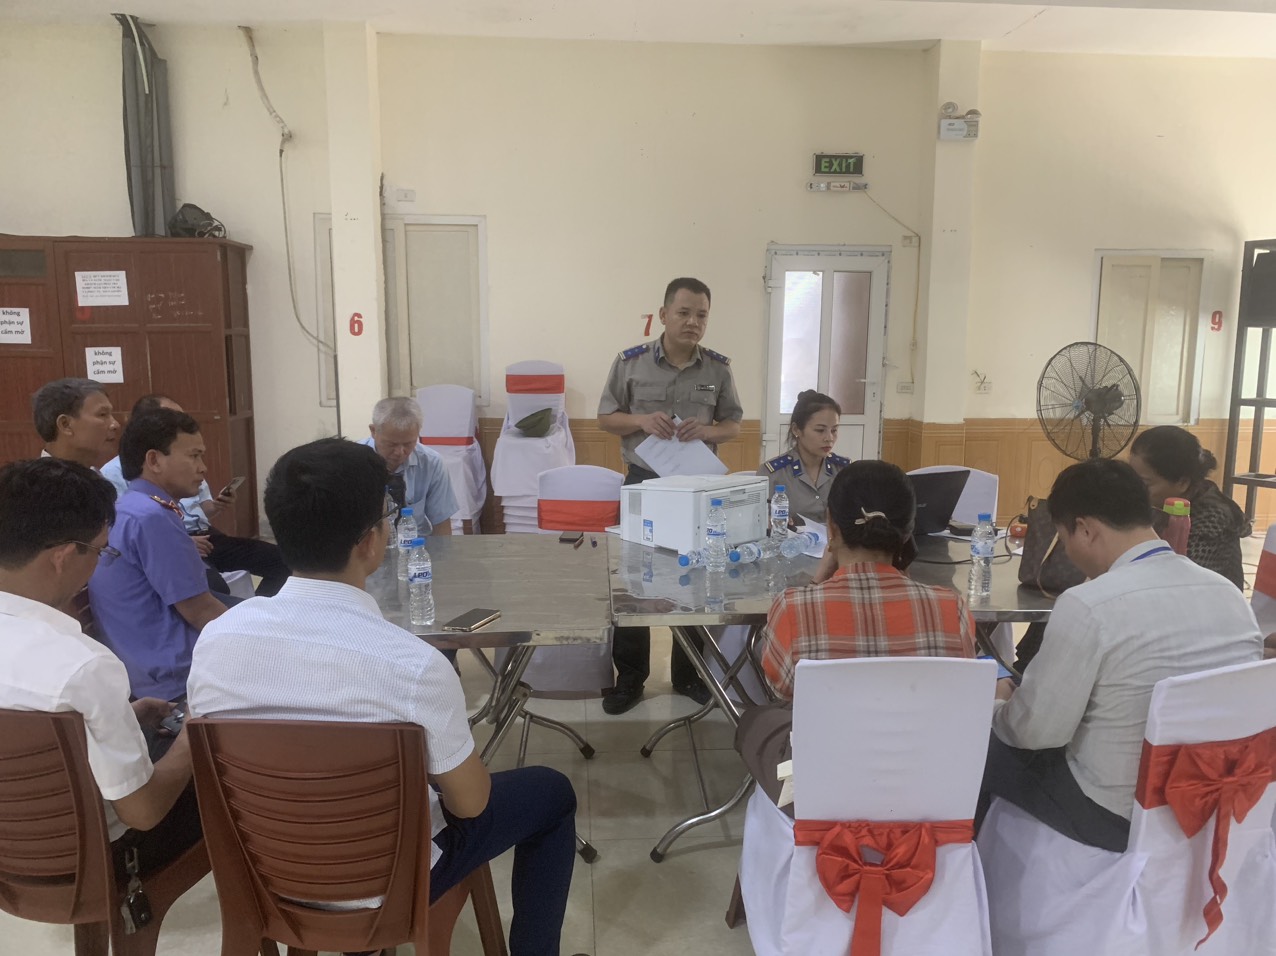 Chi cục thi hành án dân sự thị xã Cửa Lò đã  tổ chức buổi bê kiên tại khối 3, phường Nghi Hương, thị xã Cửa Lò.